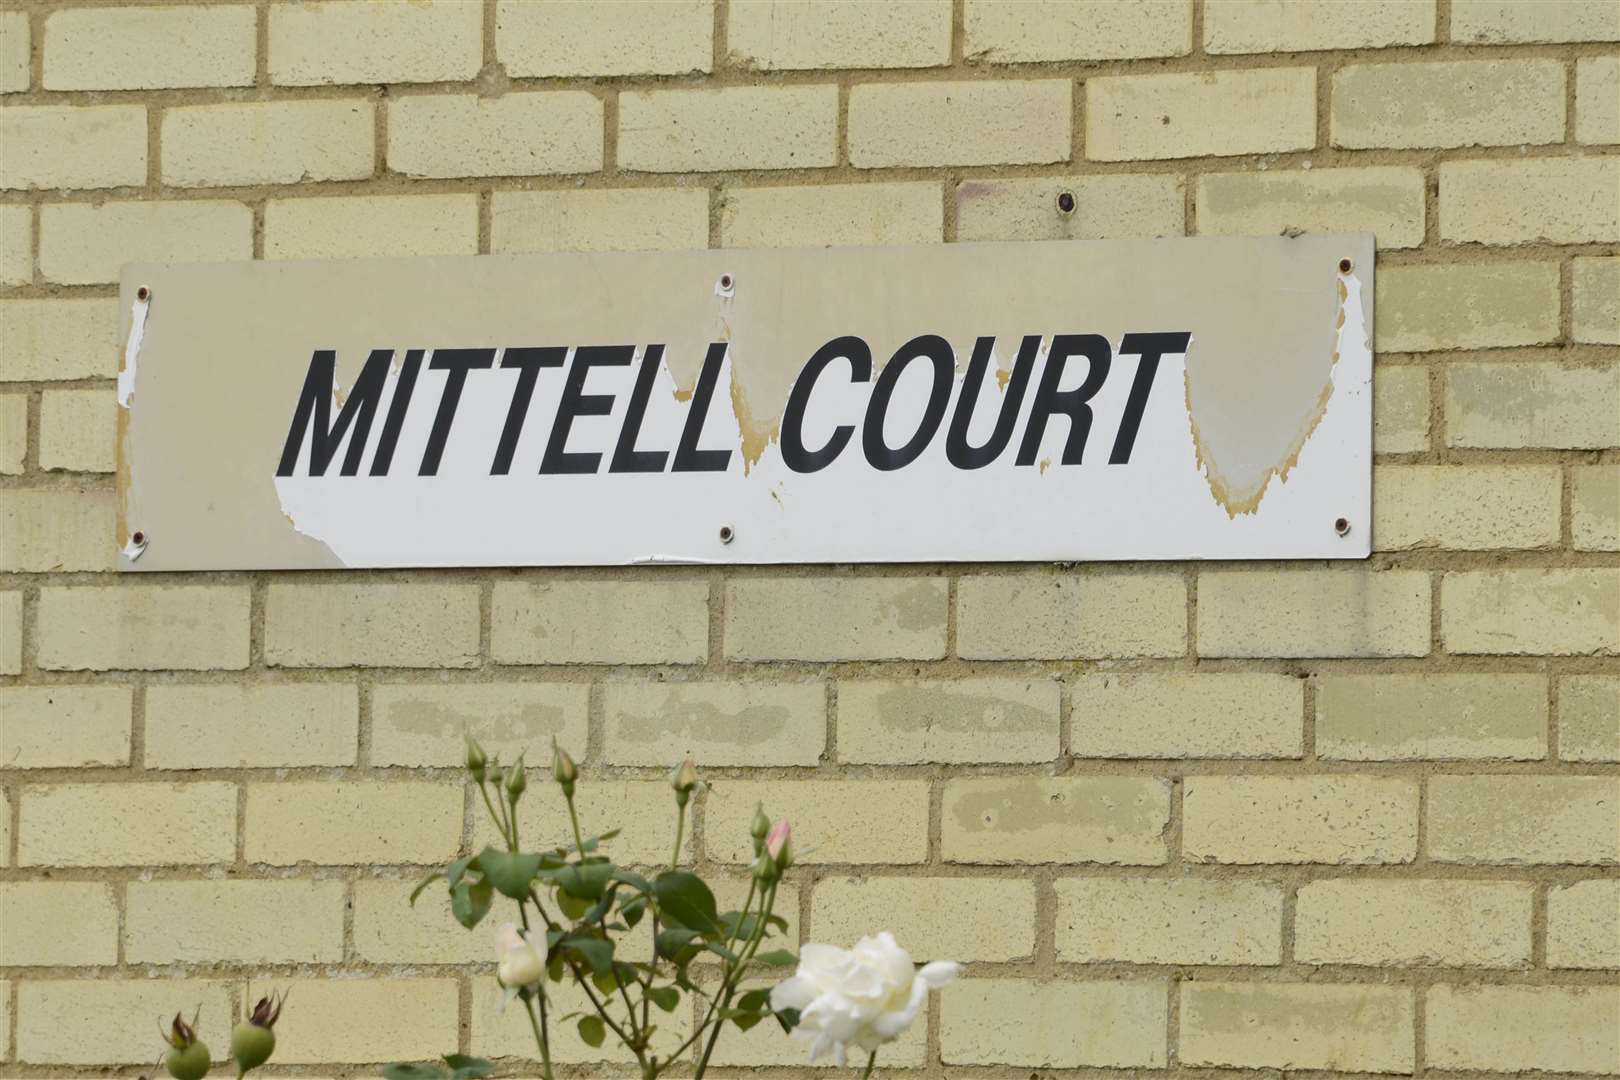 Mittell Court in Lydd